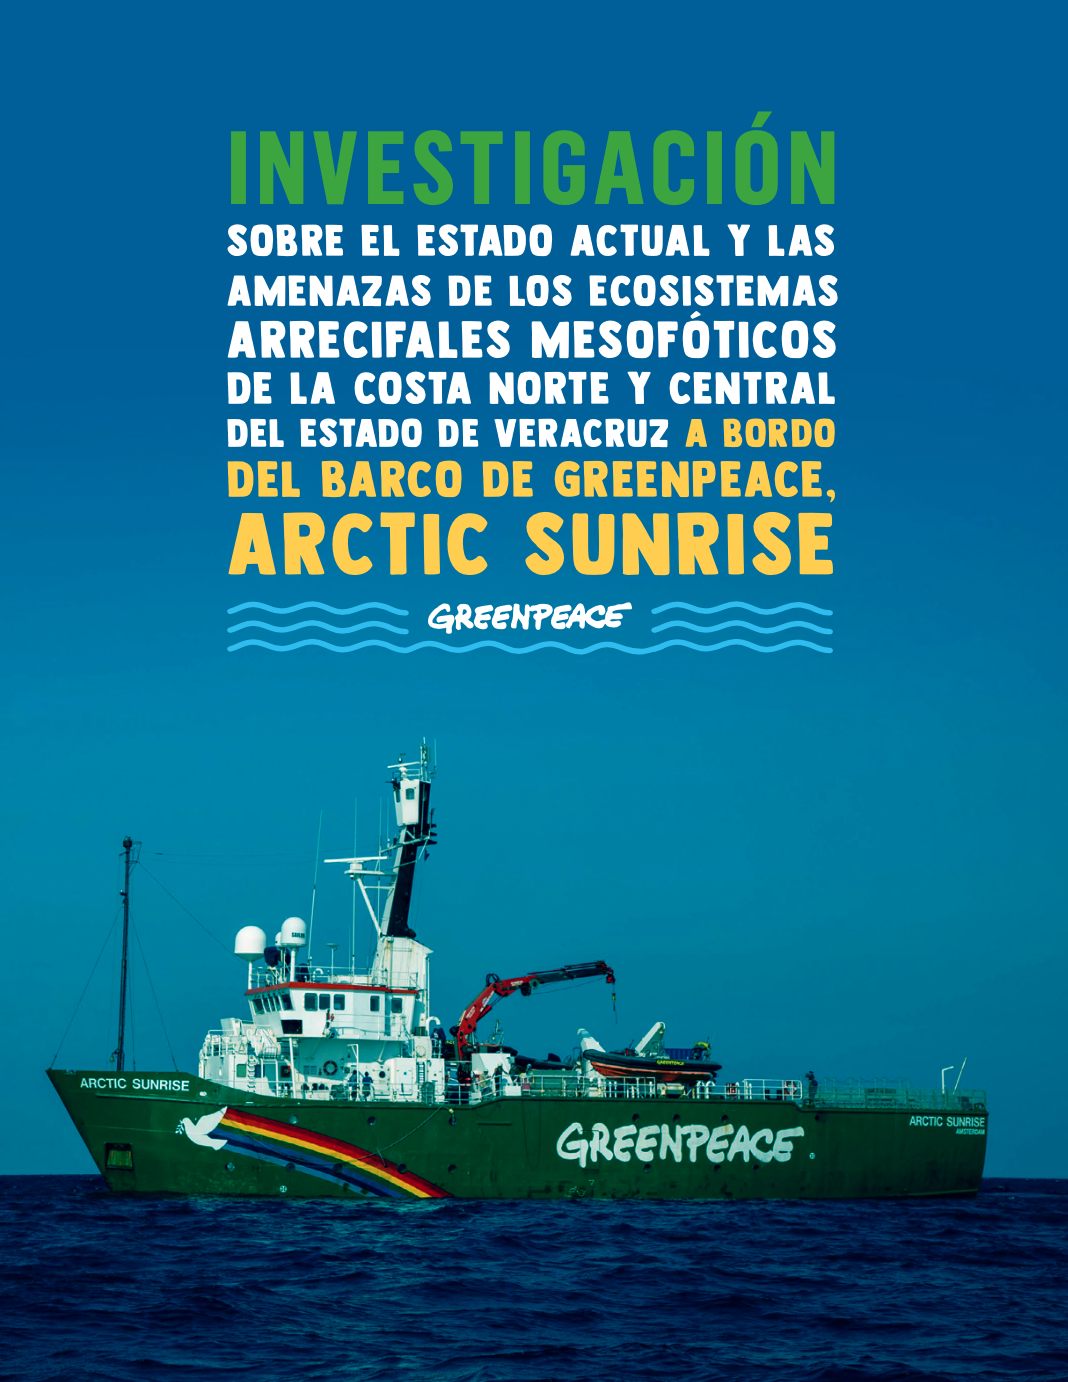 Investigación sobre el estado actual y las amenazas de los ecosistemas arrecifales mesofóticos de la costa norte y central del estado de Veracruz, a bordo del barco de Greenpeace, Arctic Sunrise (Greenpeace)